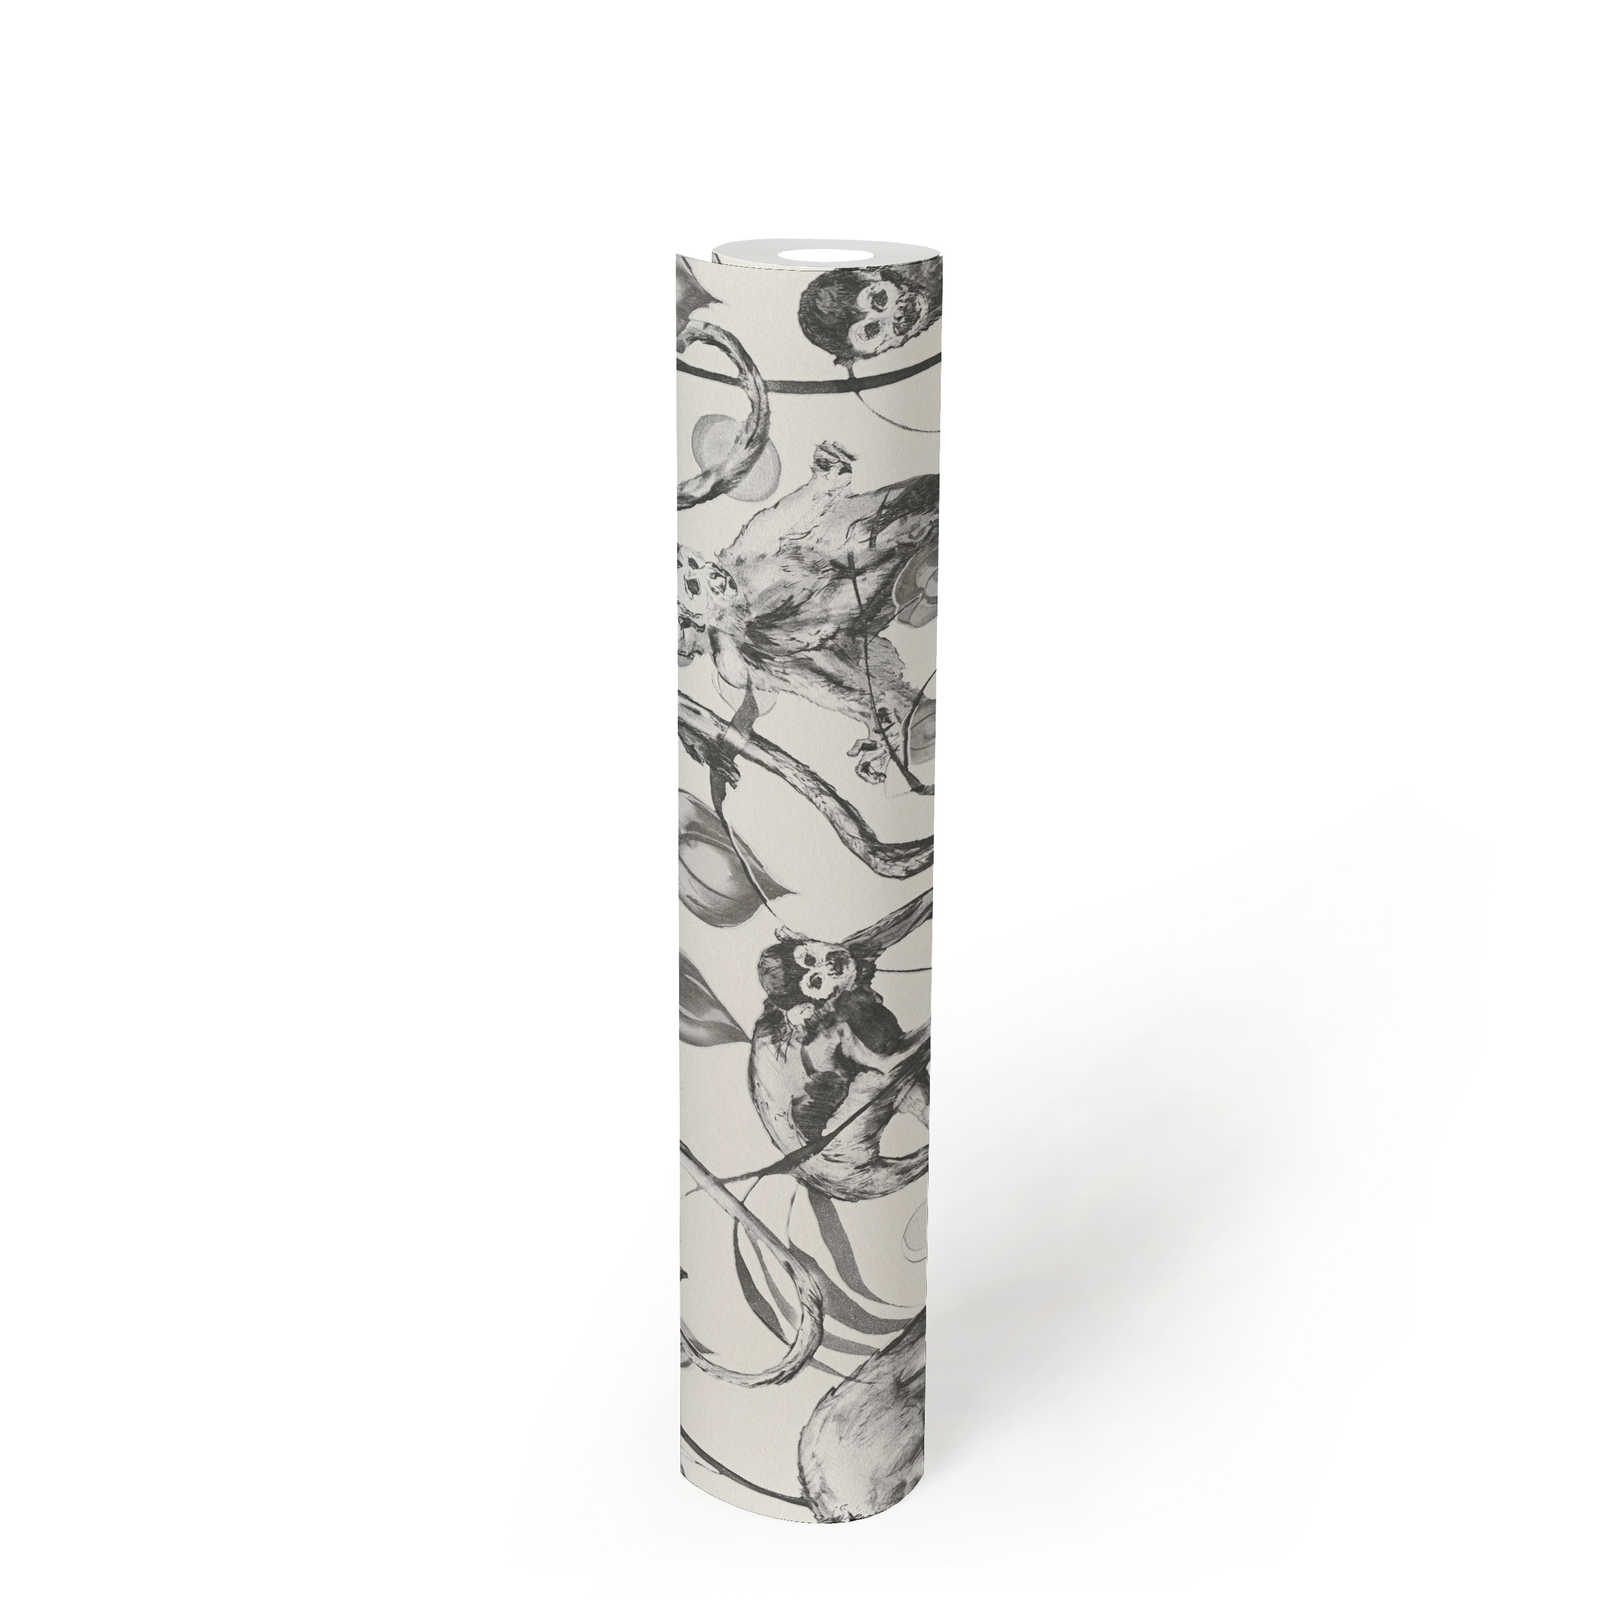             MICHALSKY papier peint intissé noir et blanc motif singe
        